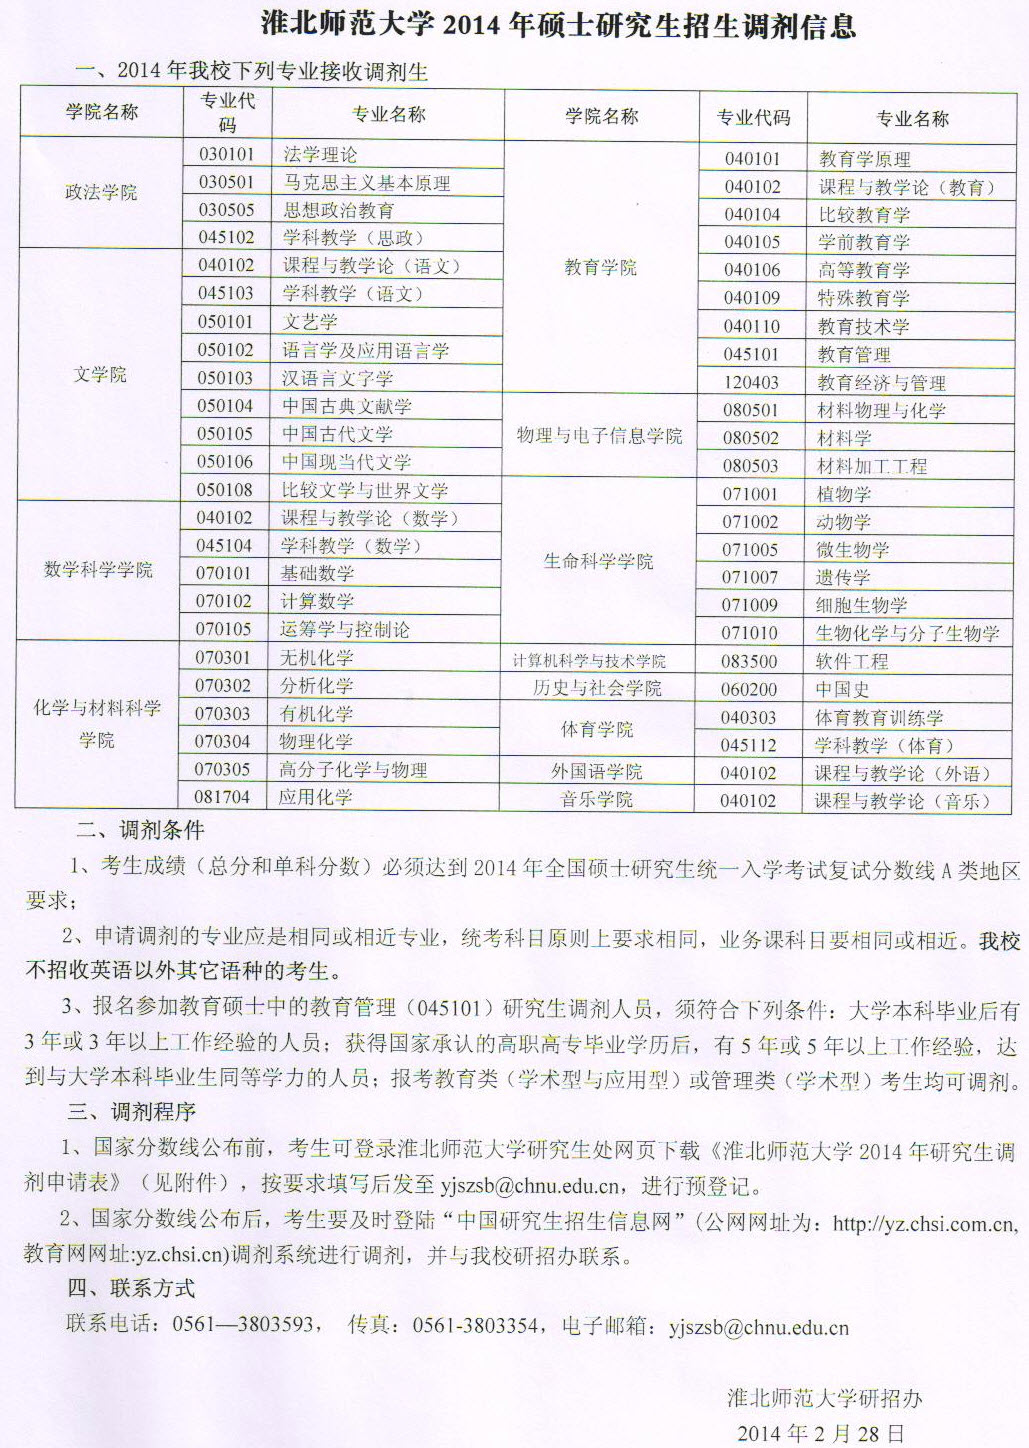 淮北师范大学2014年硕士研究生调剂信息-考研